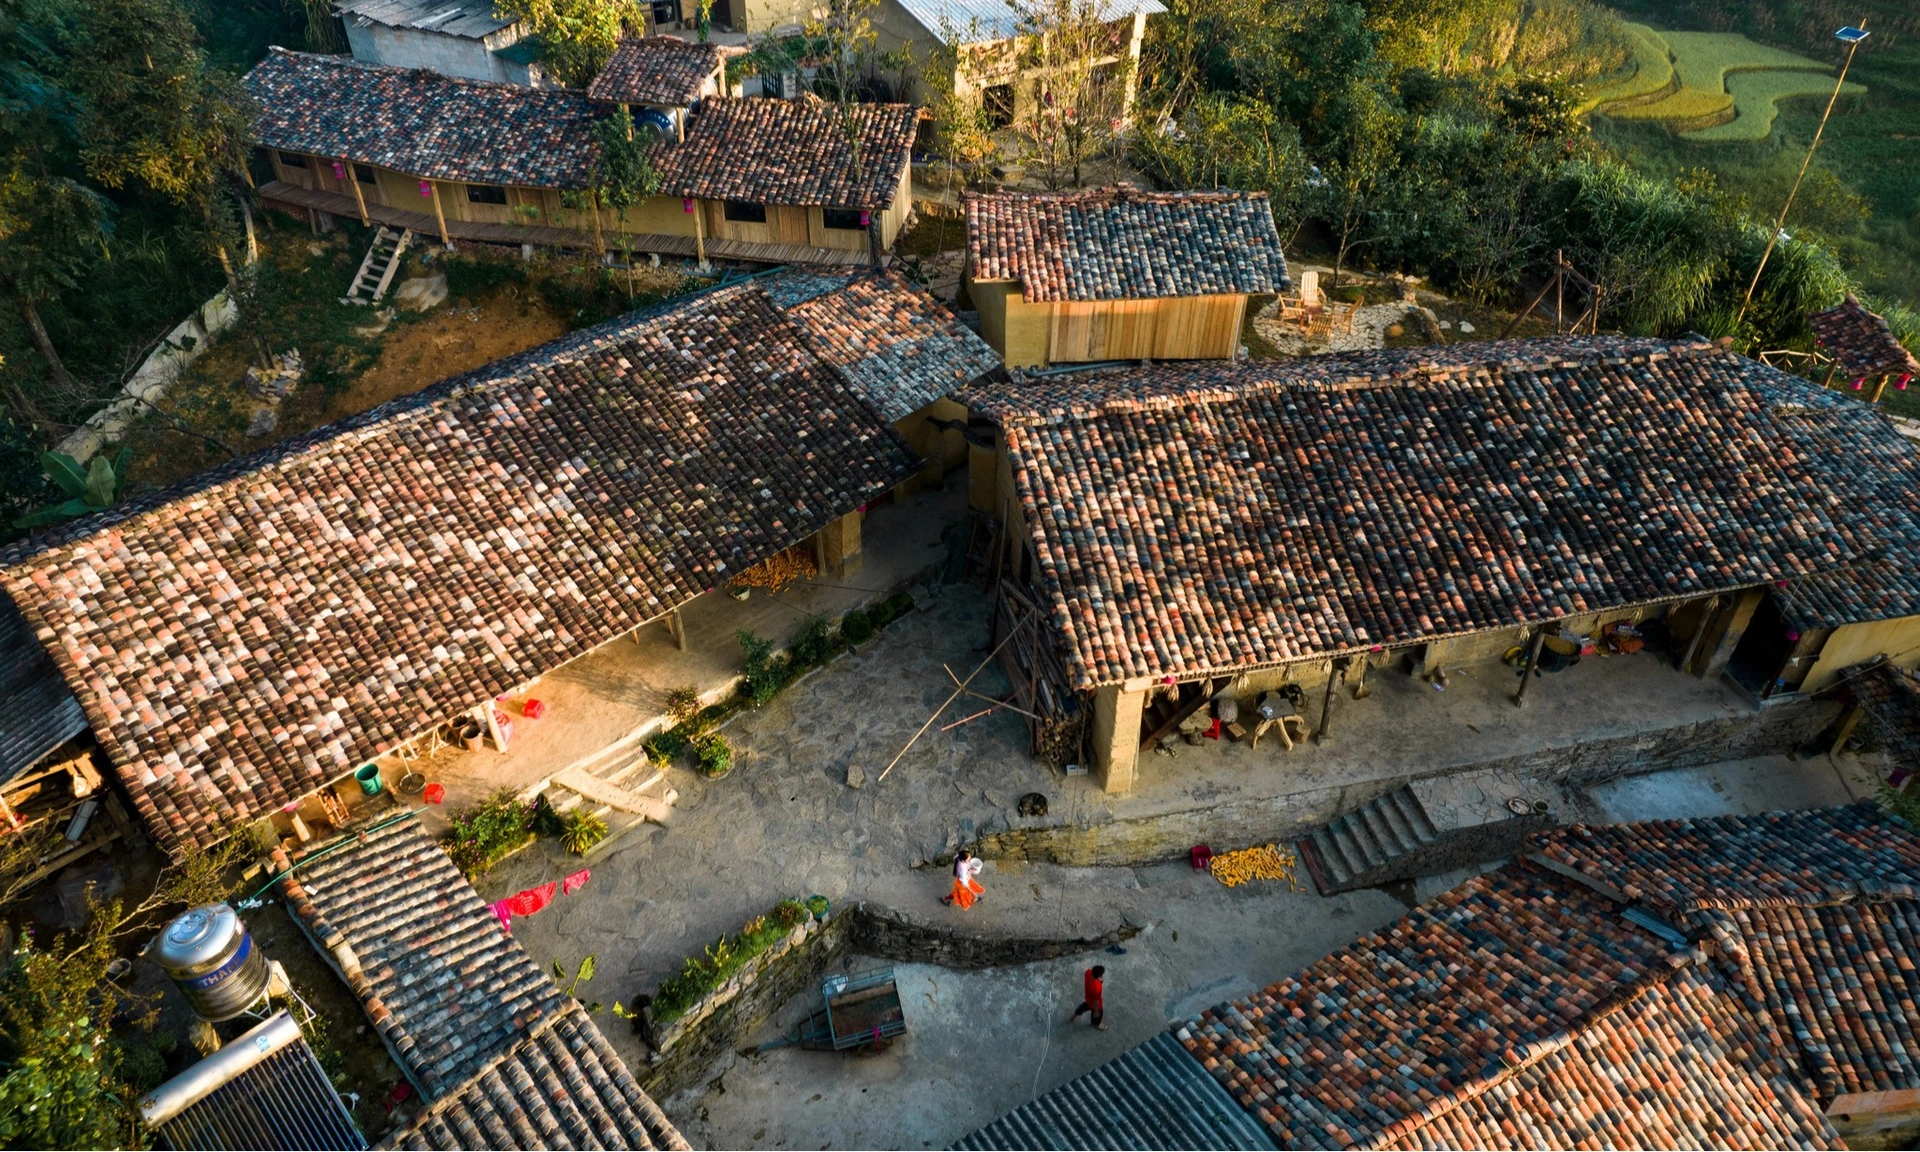 Thèn Pả - ngôi làng nhà trình tường dưới cột cờ Lũng Cú